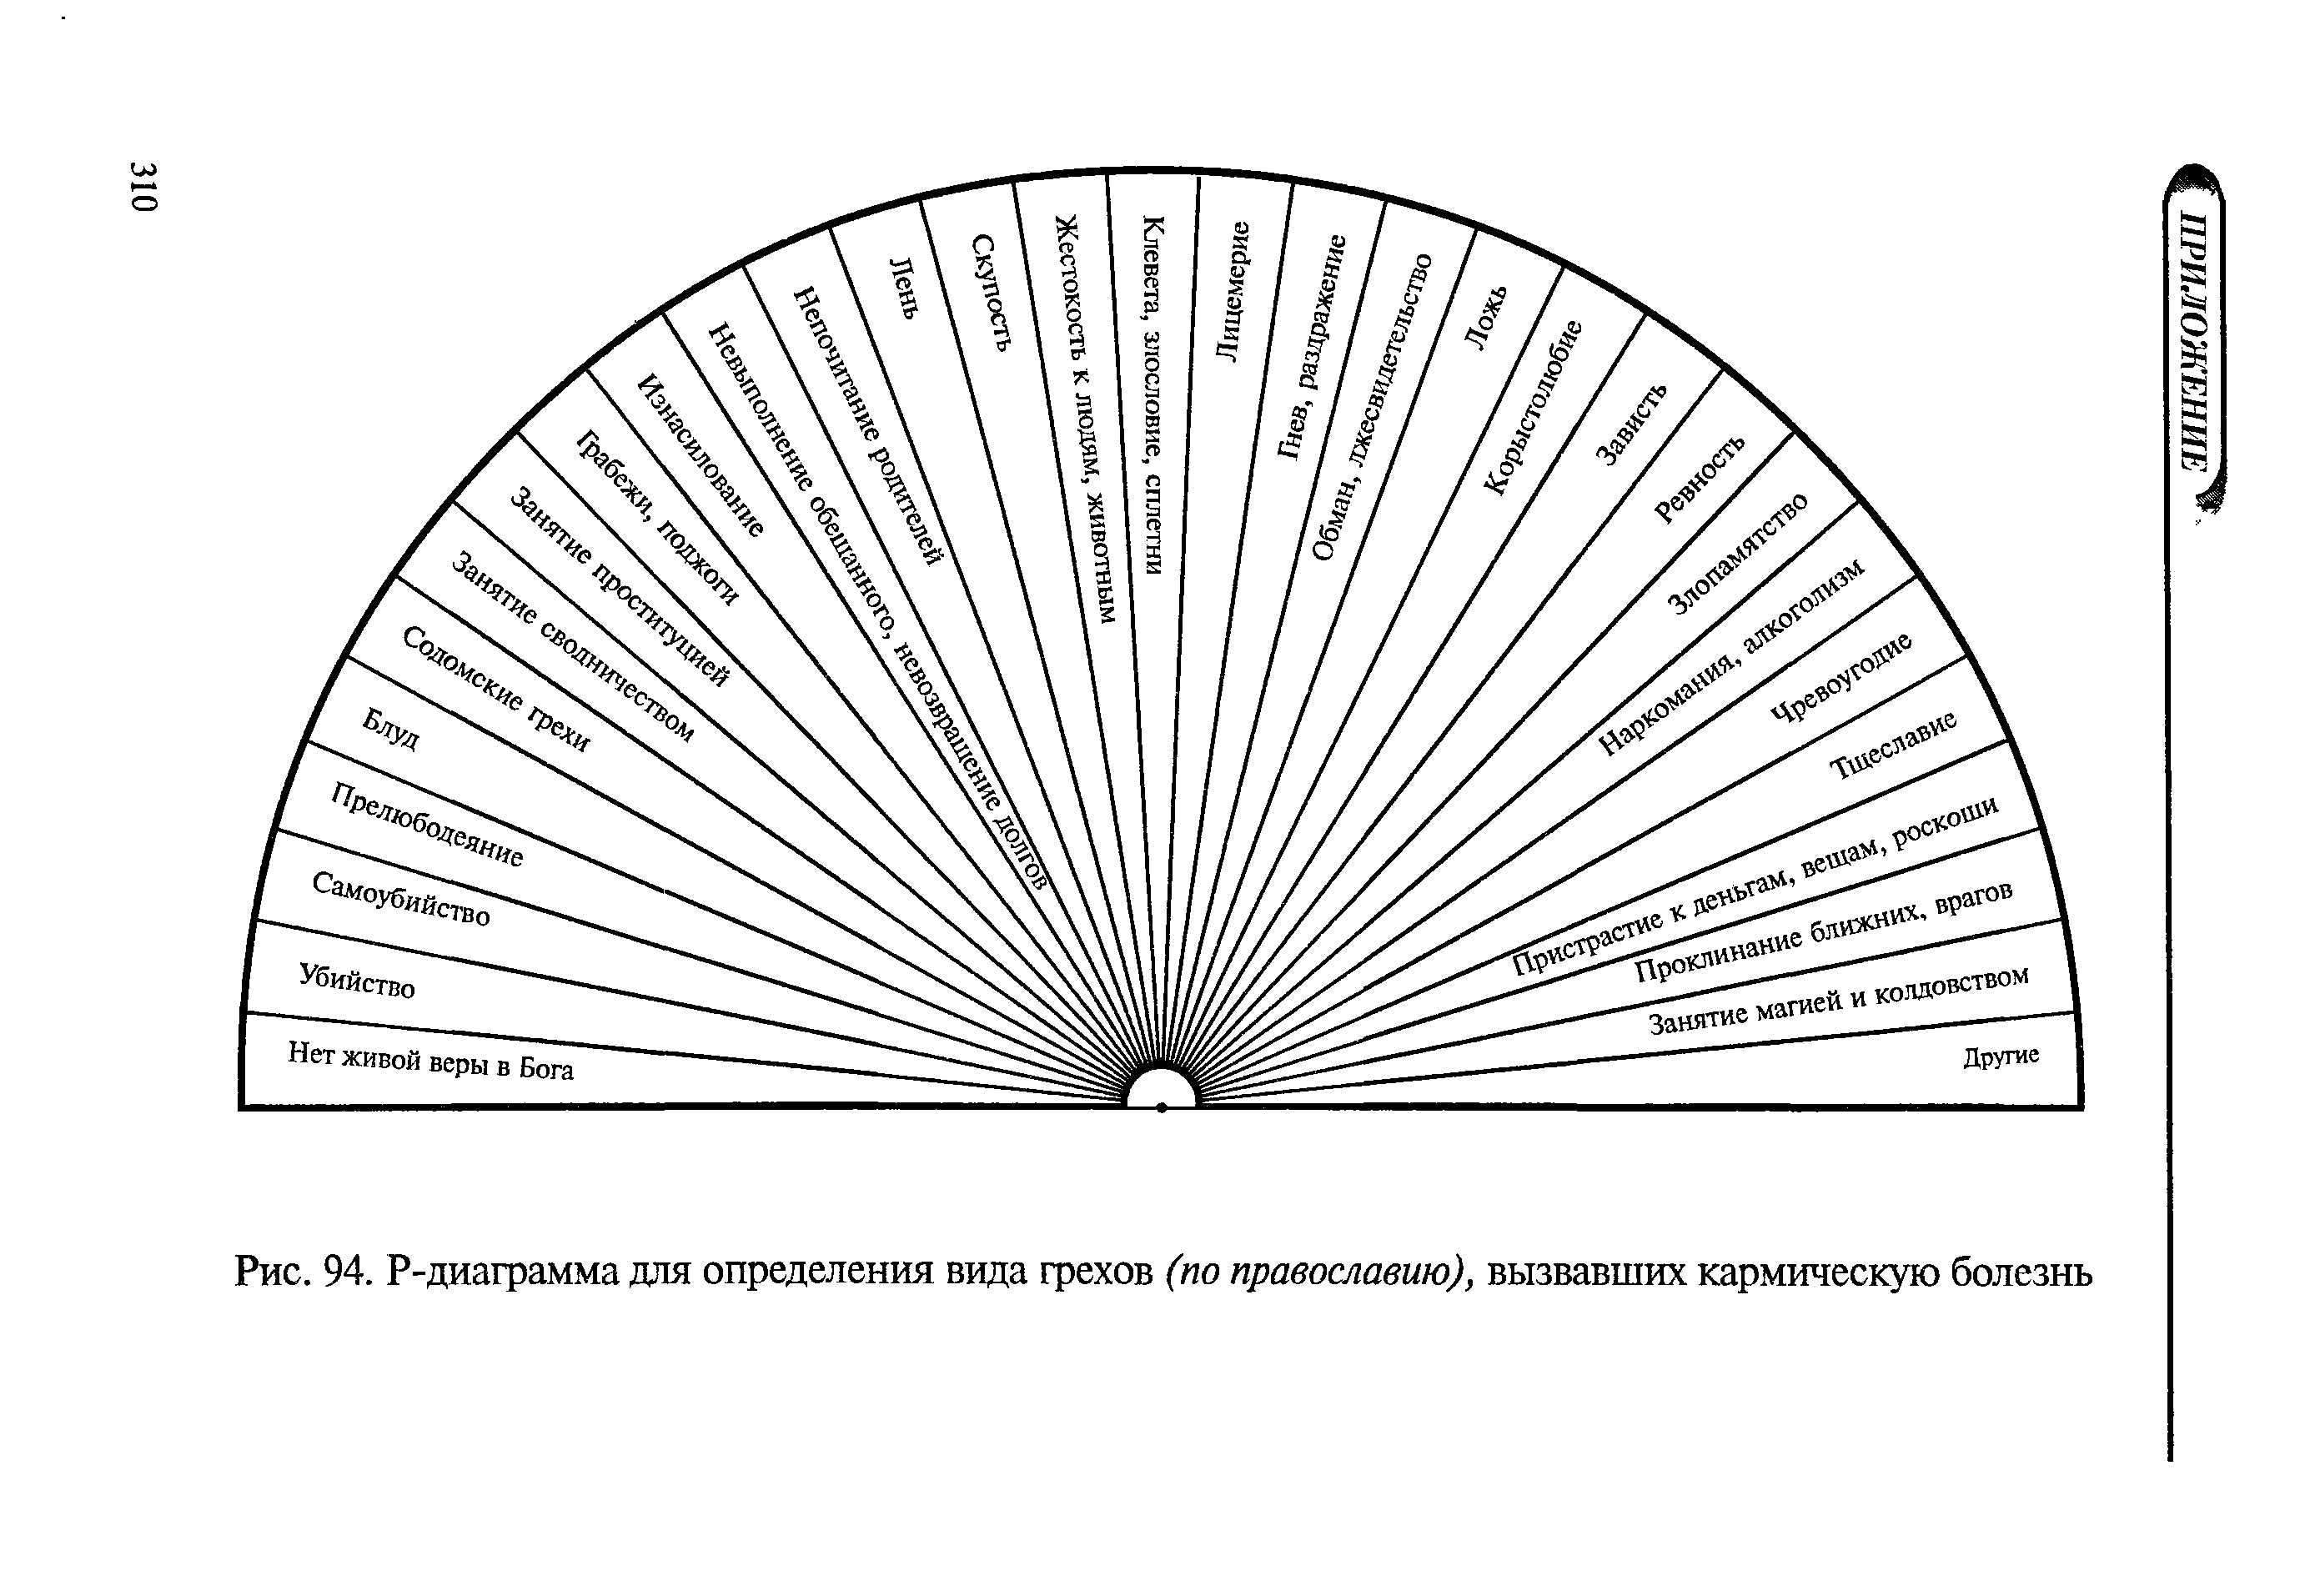 Рис. 94. Р-диаграмма для определения вида грехов (по православию), вызвавших кармическую болезнь...